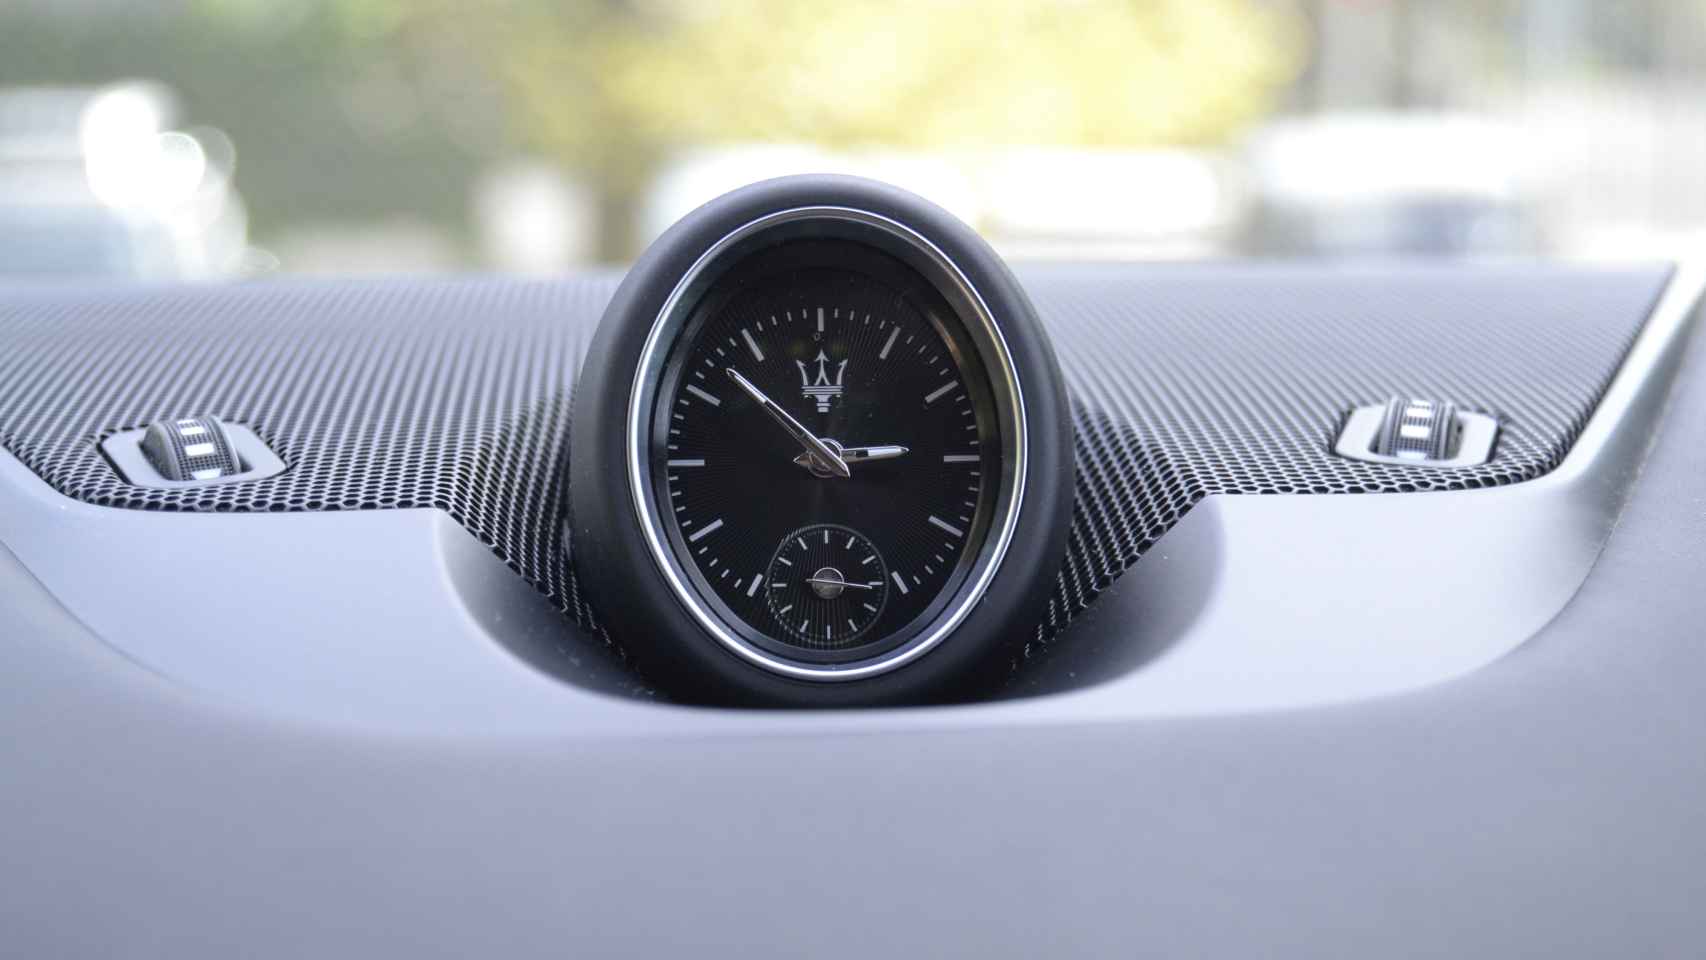 El Maserati Levante presume de un elegante reloj analógico en la parte superior del salpicadero.